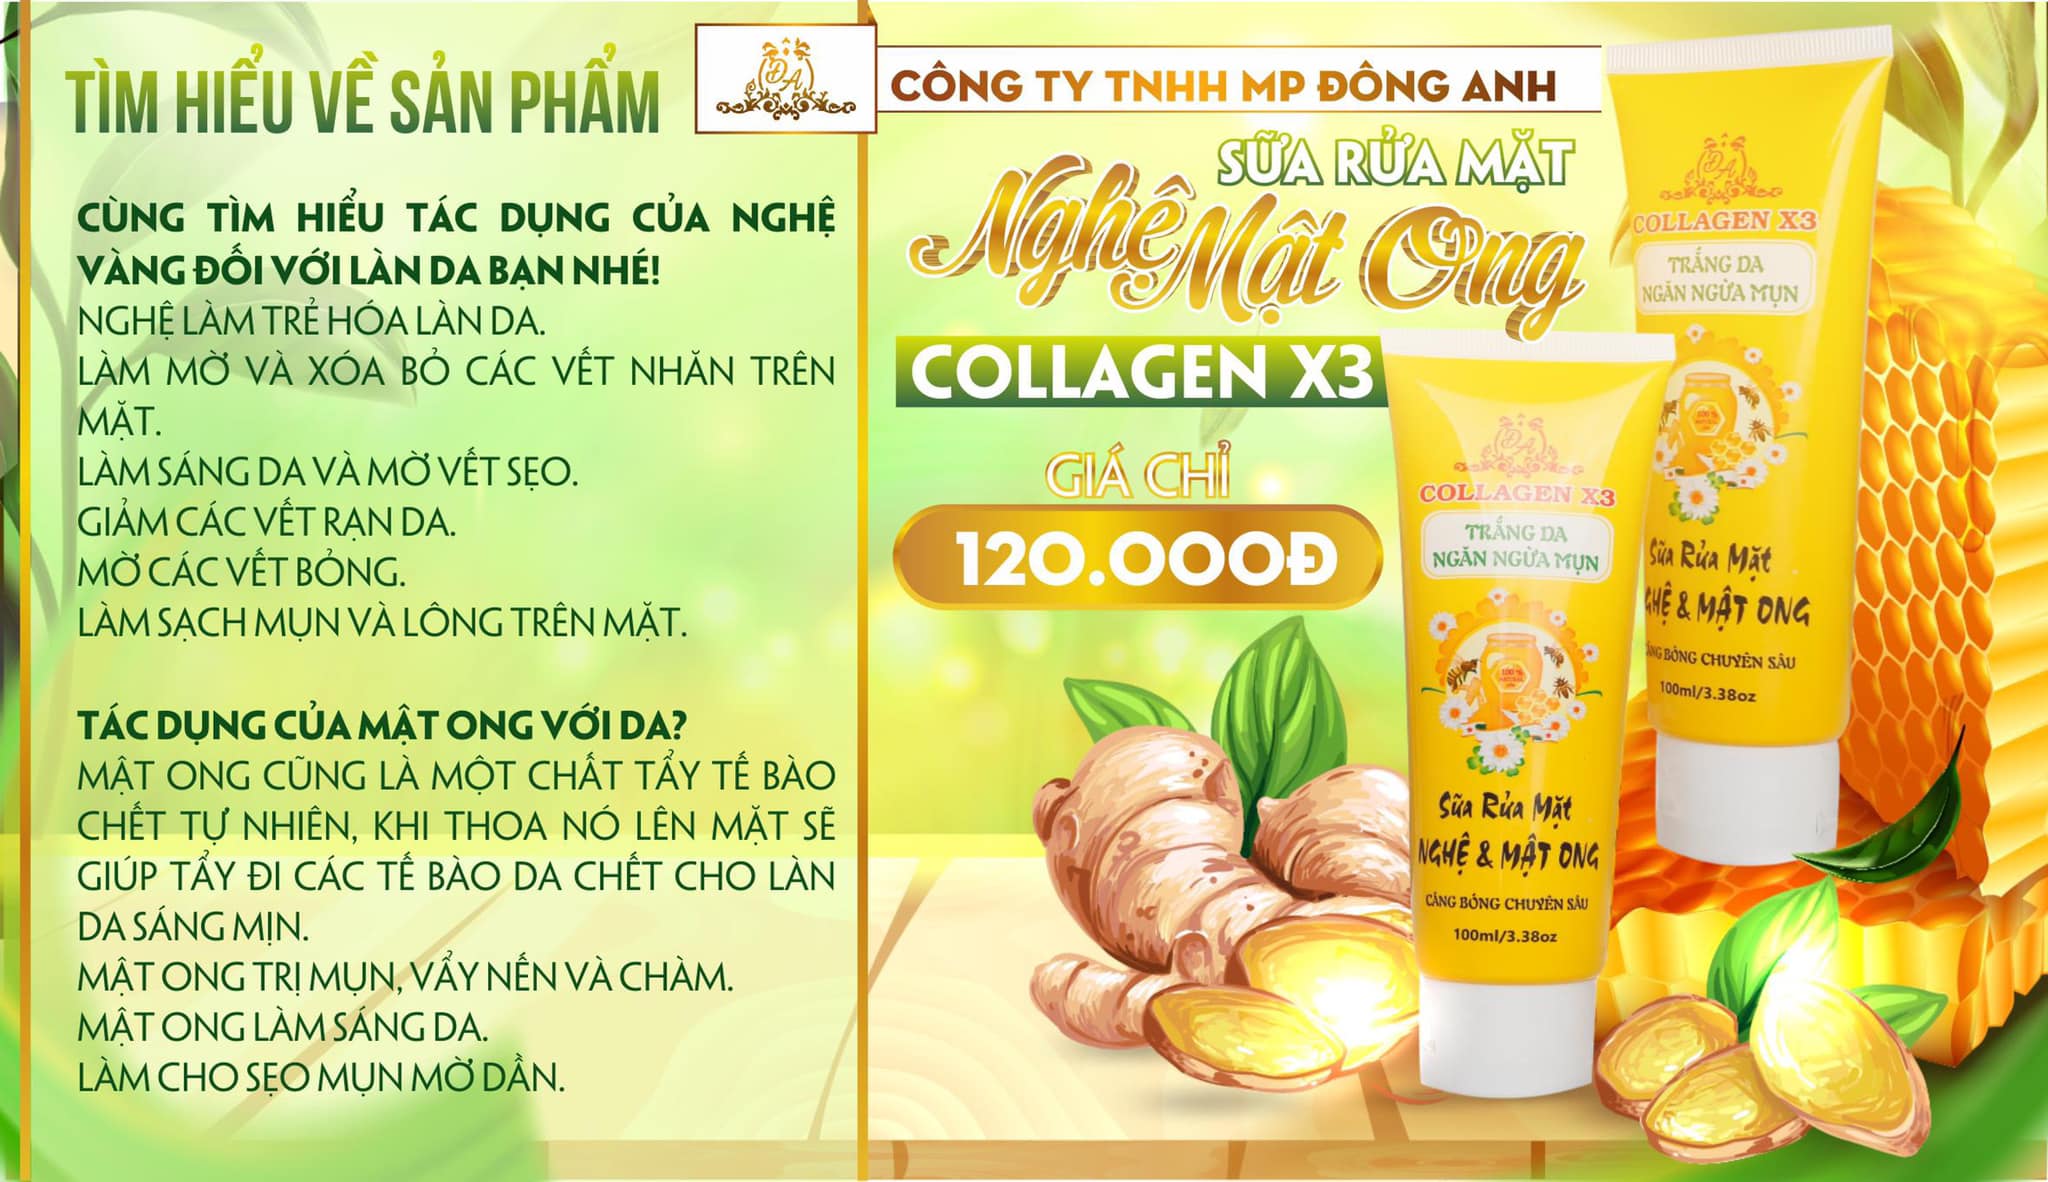 Sữa rửa mặt nghệ mật ong Collagen X3 Mỹ Phẩm Đông Anh